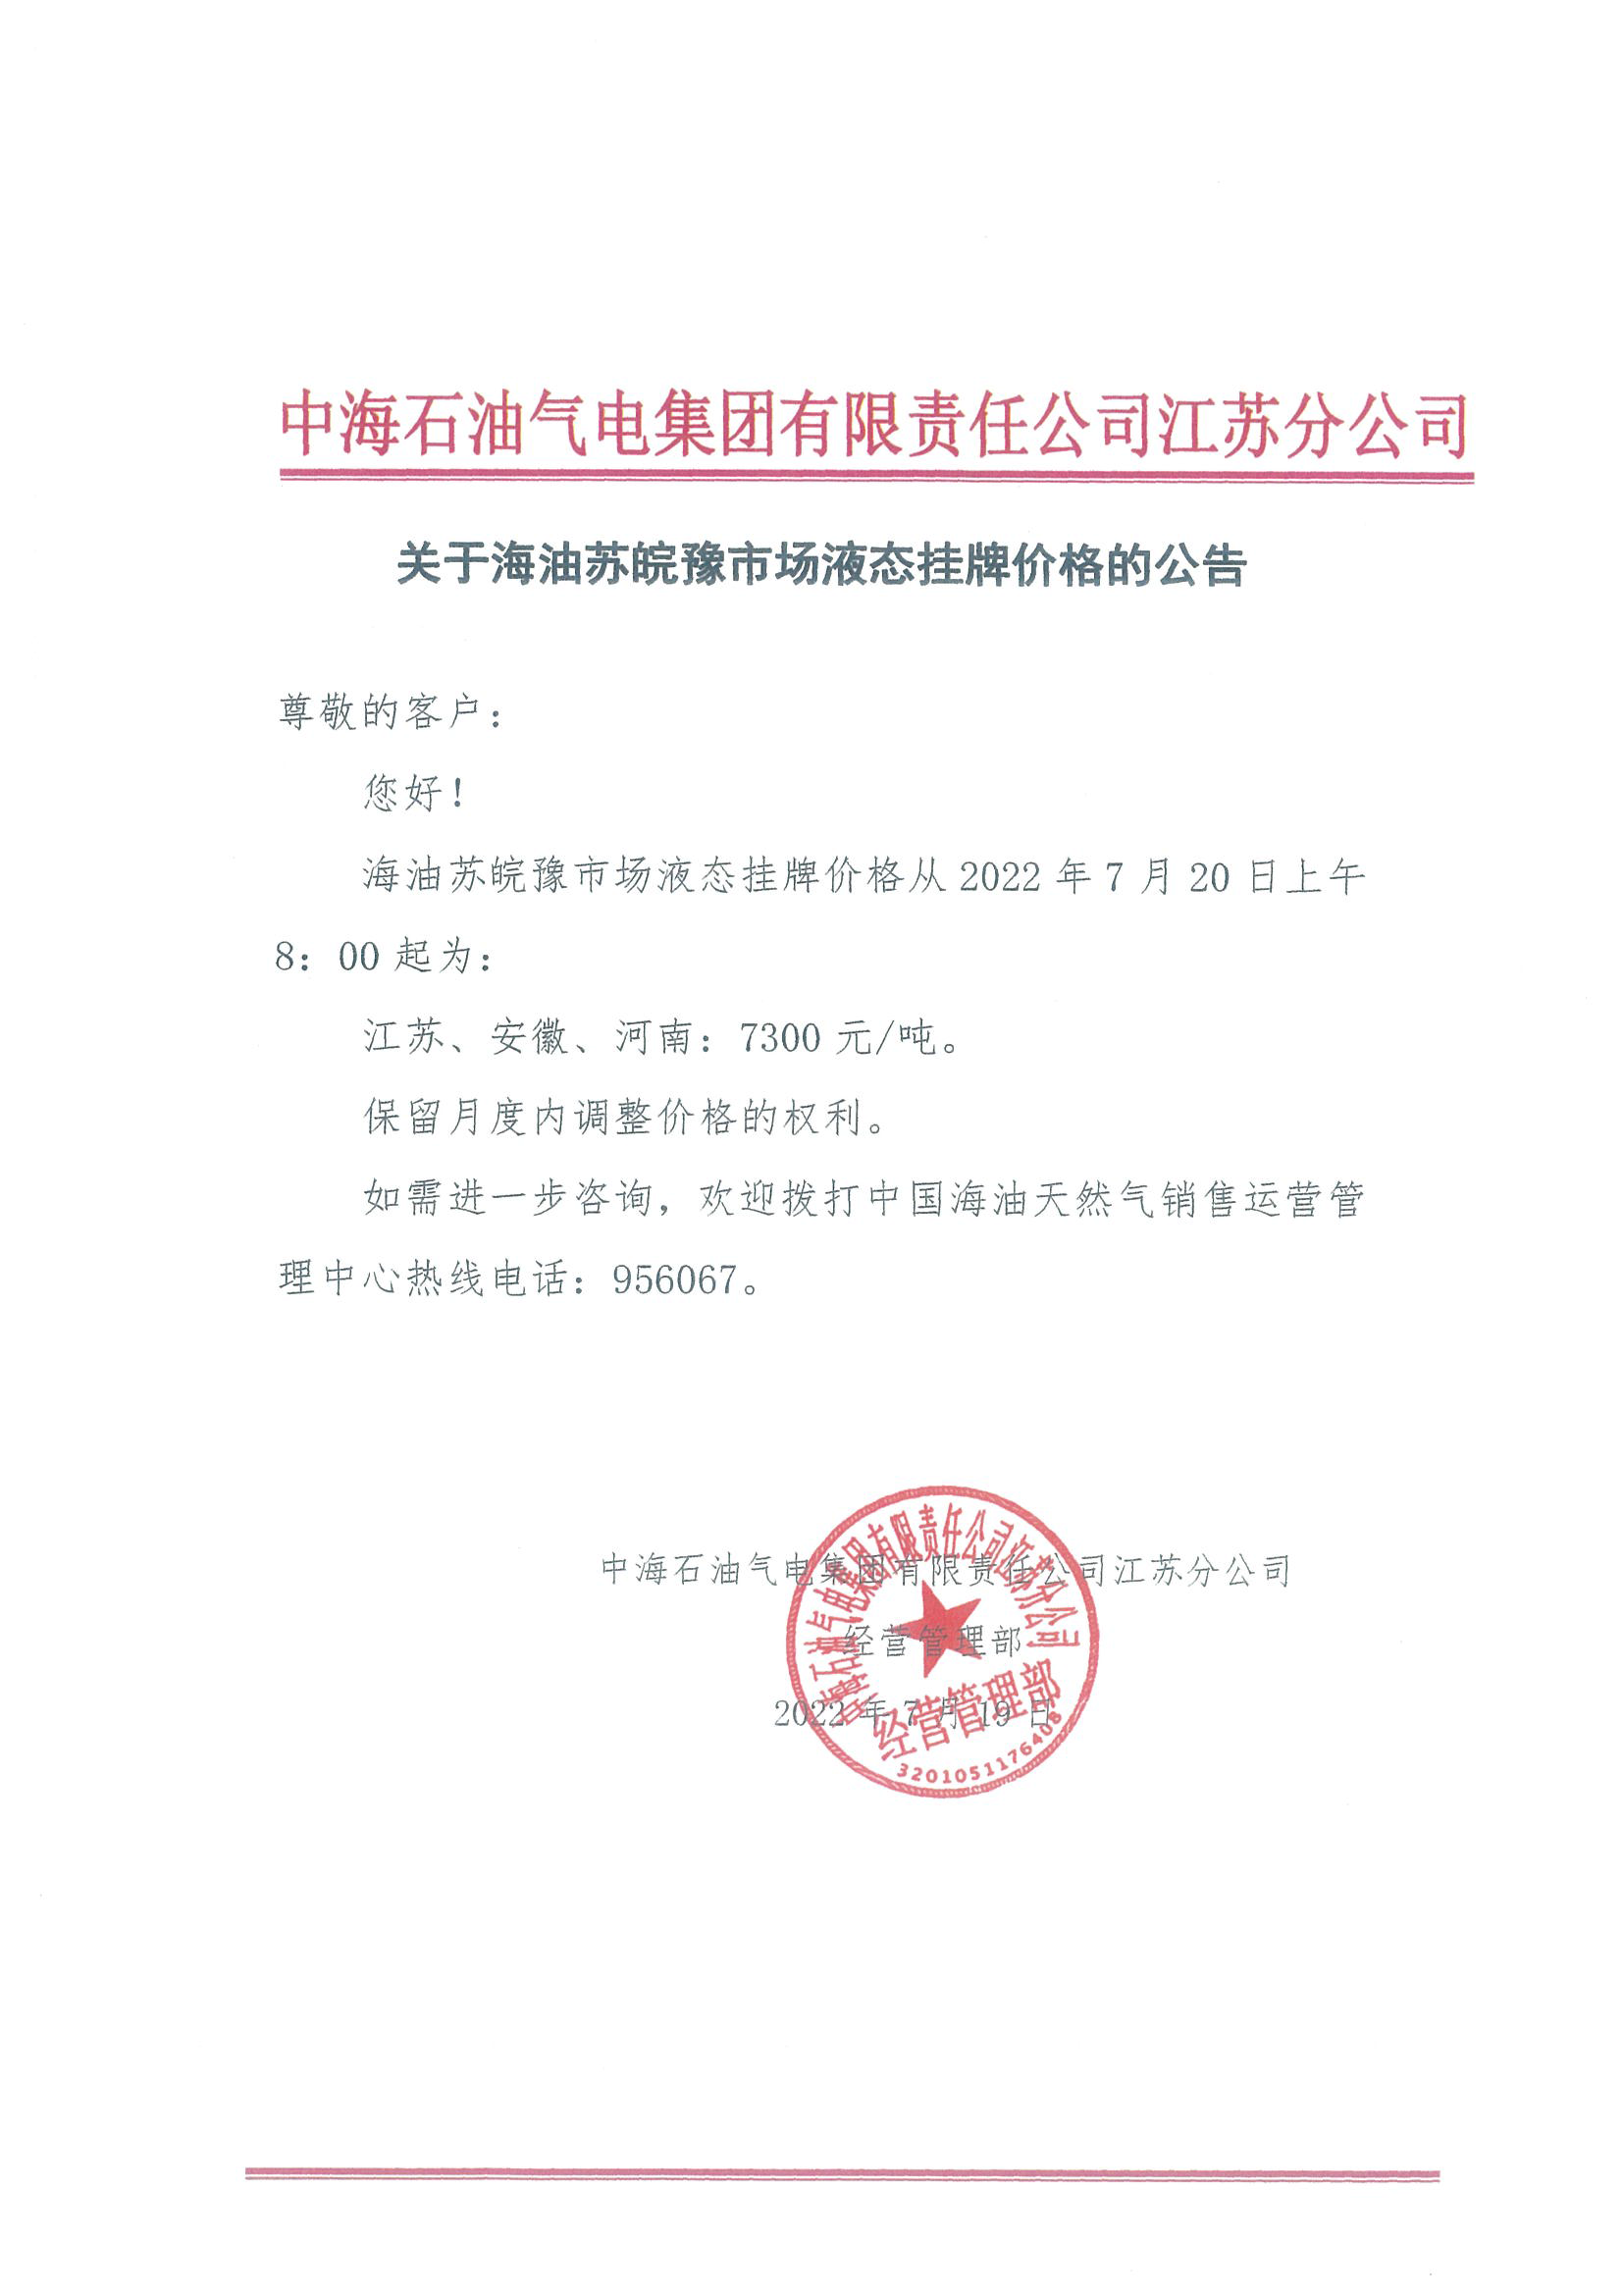 中海油江苏分公司关于7月20日华东苏皖市场价格调整公告.png